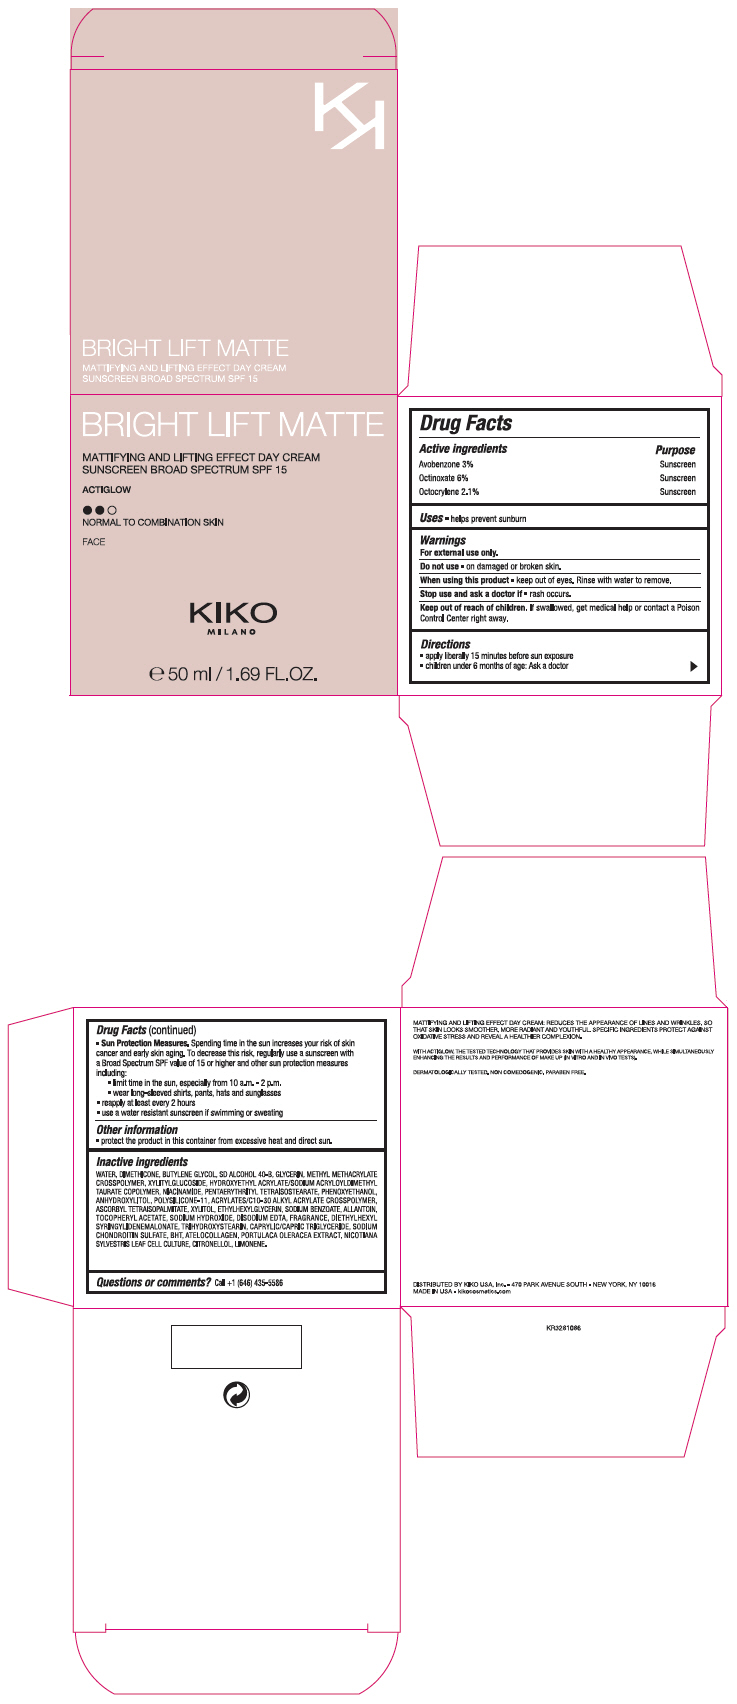 PRINCIPAL DISPLAY PANEL - 50 ml Jar Carton